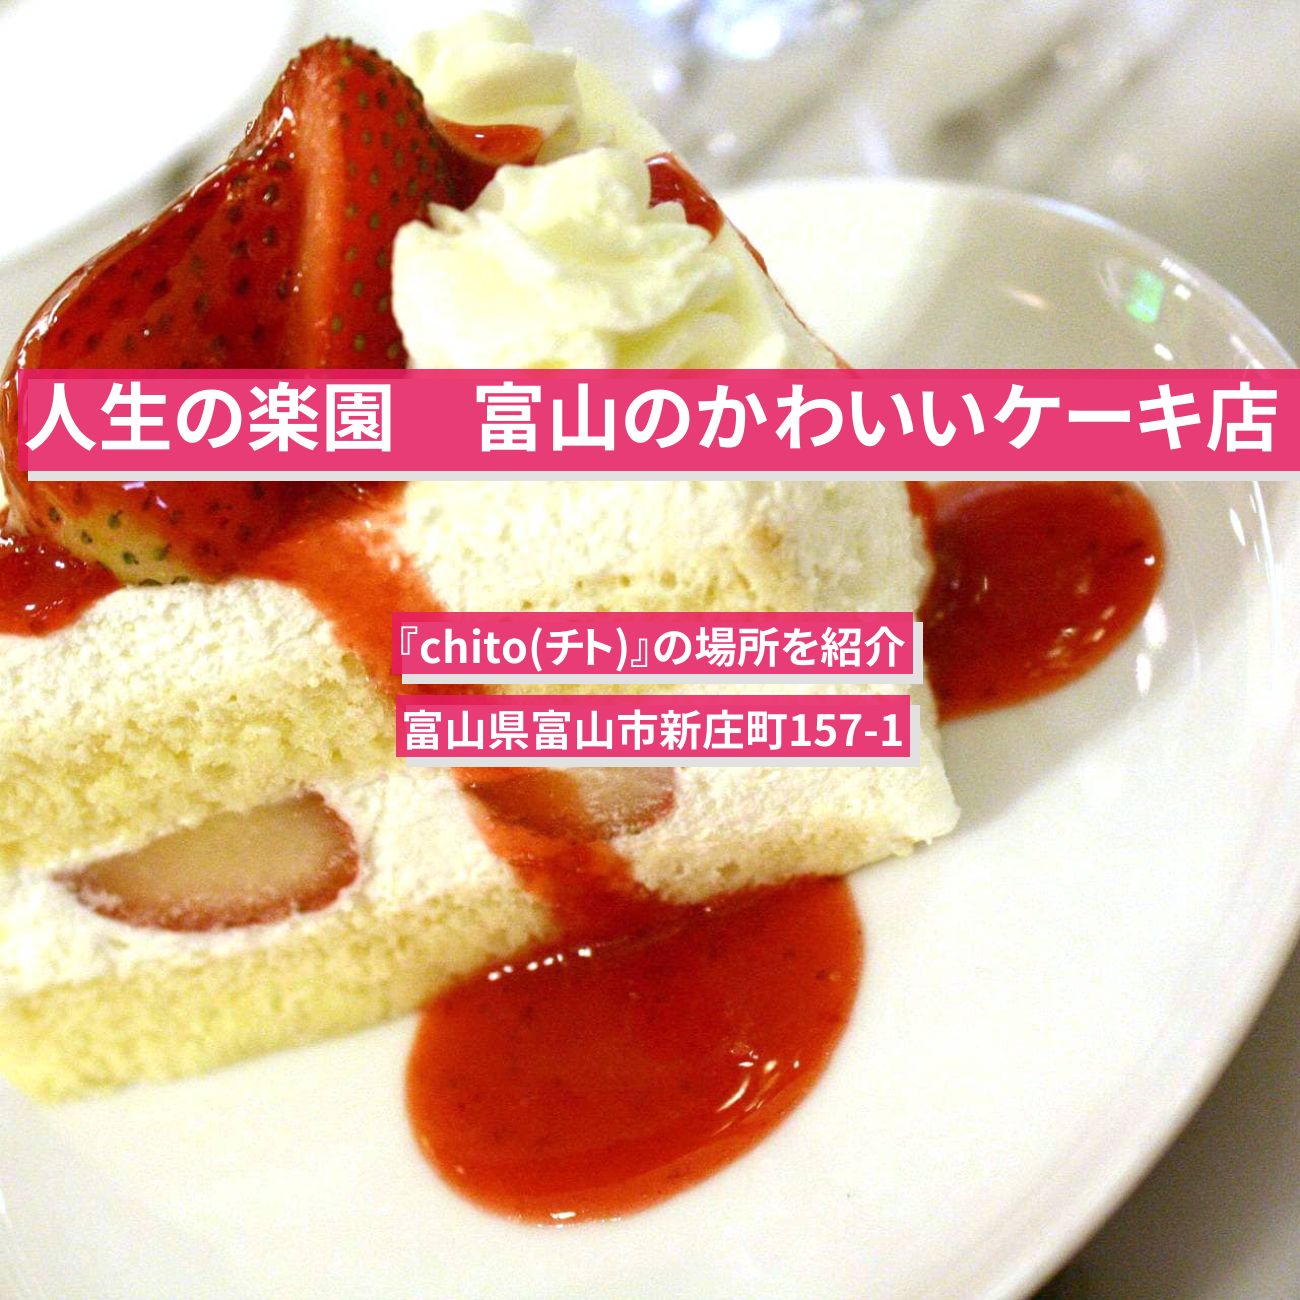 【人生の楽園】かわいい苺ショートケーキ『chito(チト)』富山県新庄町の場所を紹介